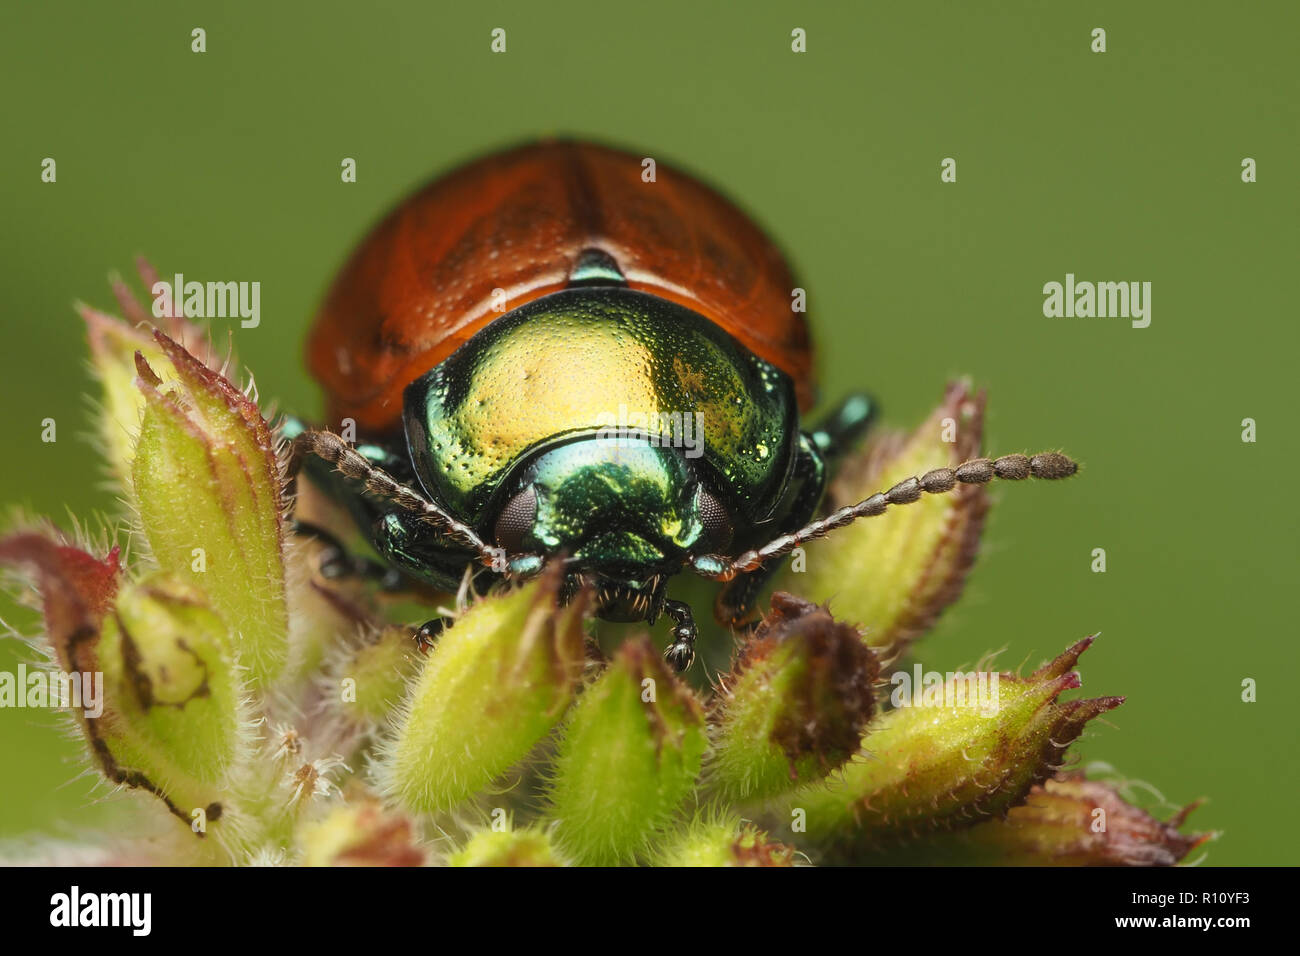 Vorderansicht des Blattes Käfer (Chrysolina polita) oben auf der Anlage thront. Tipperary, Irland Stockfoto